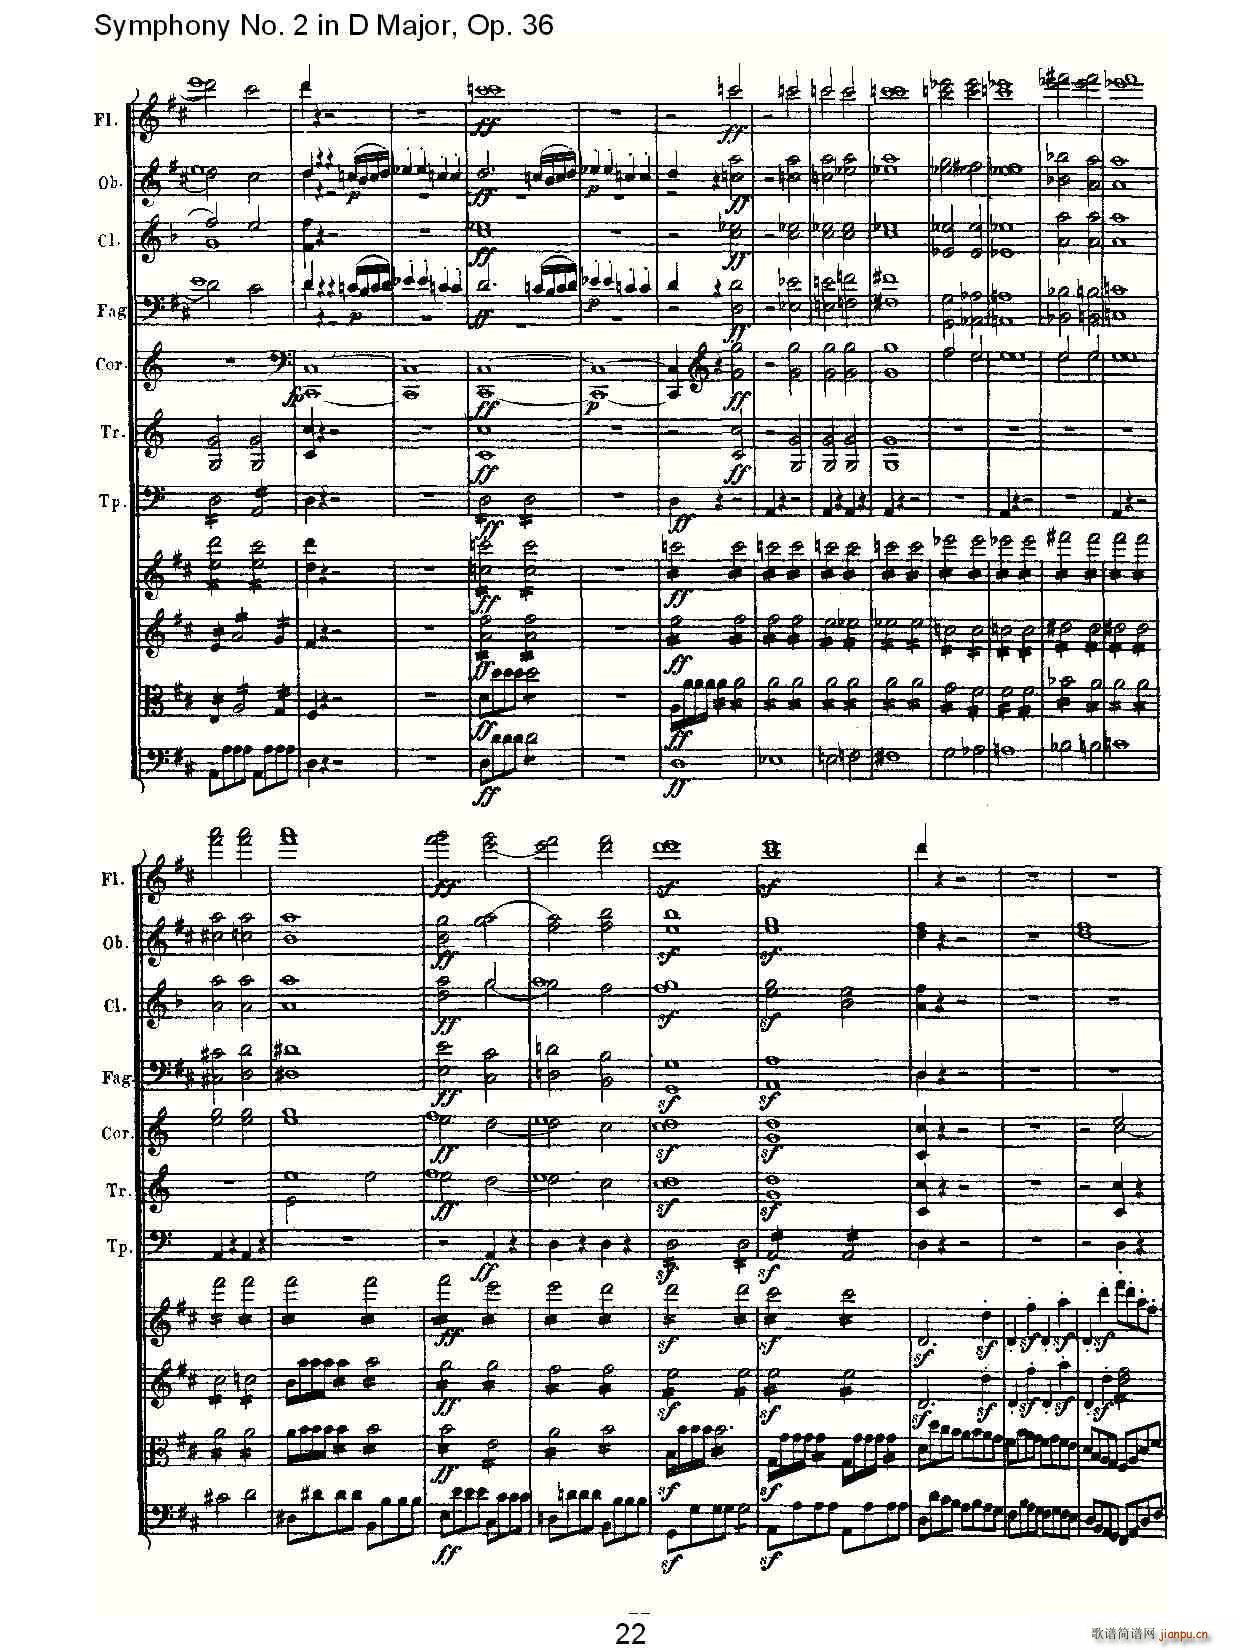 Symphony No. 2 in D Major, Op. 36(ʮּ)22